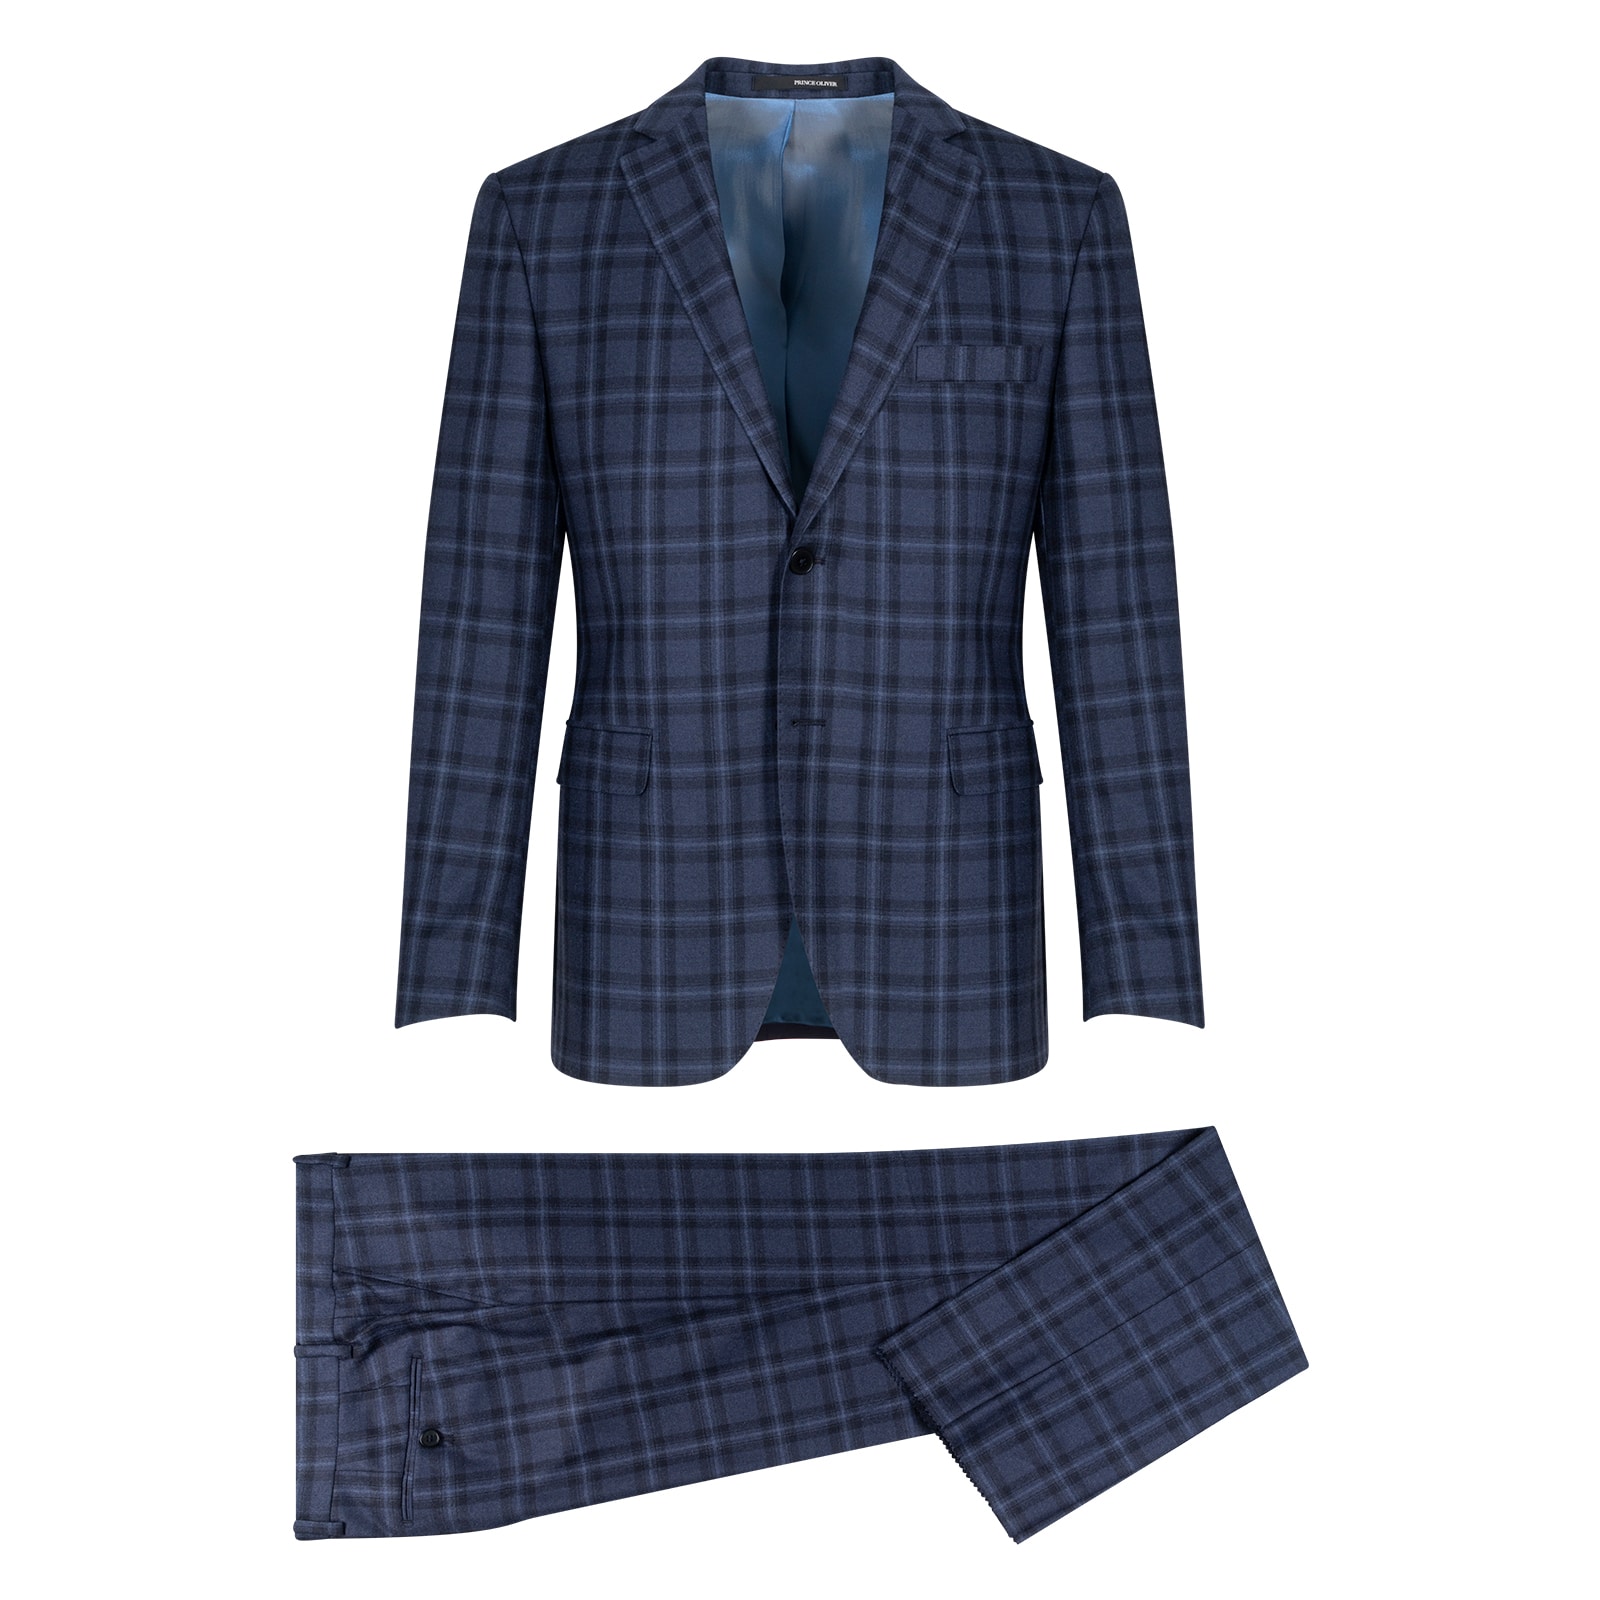 Κοστούμι Μπλε Καρό Με Γιλέκο 100% Wool Super 100s (Modern Fit)